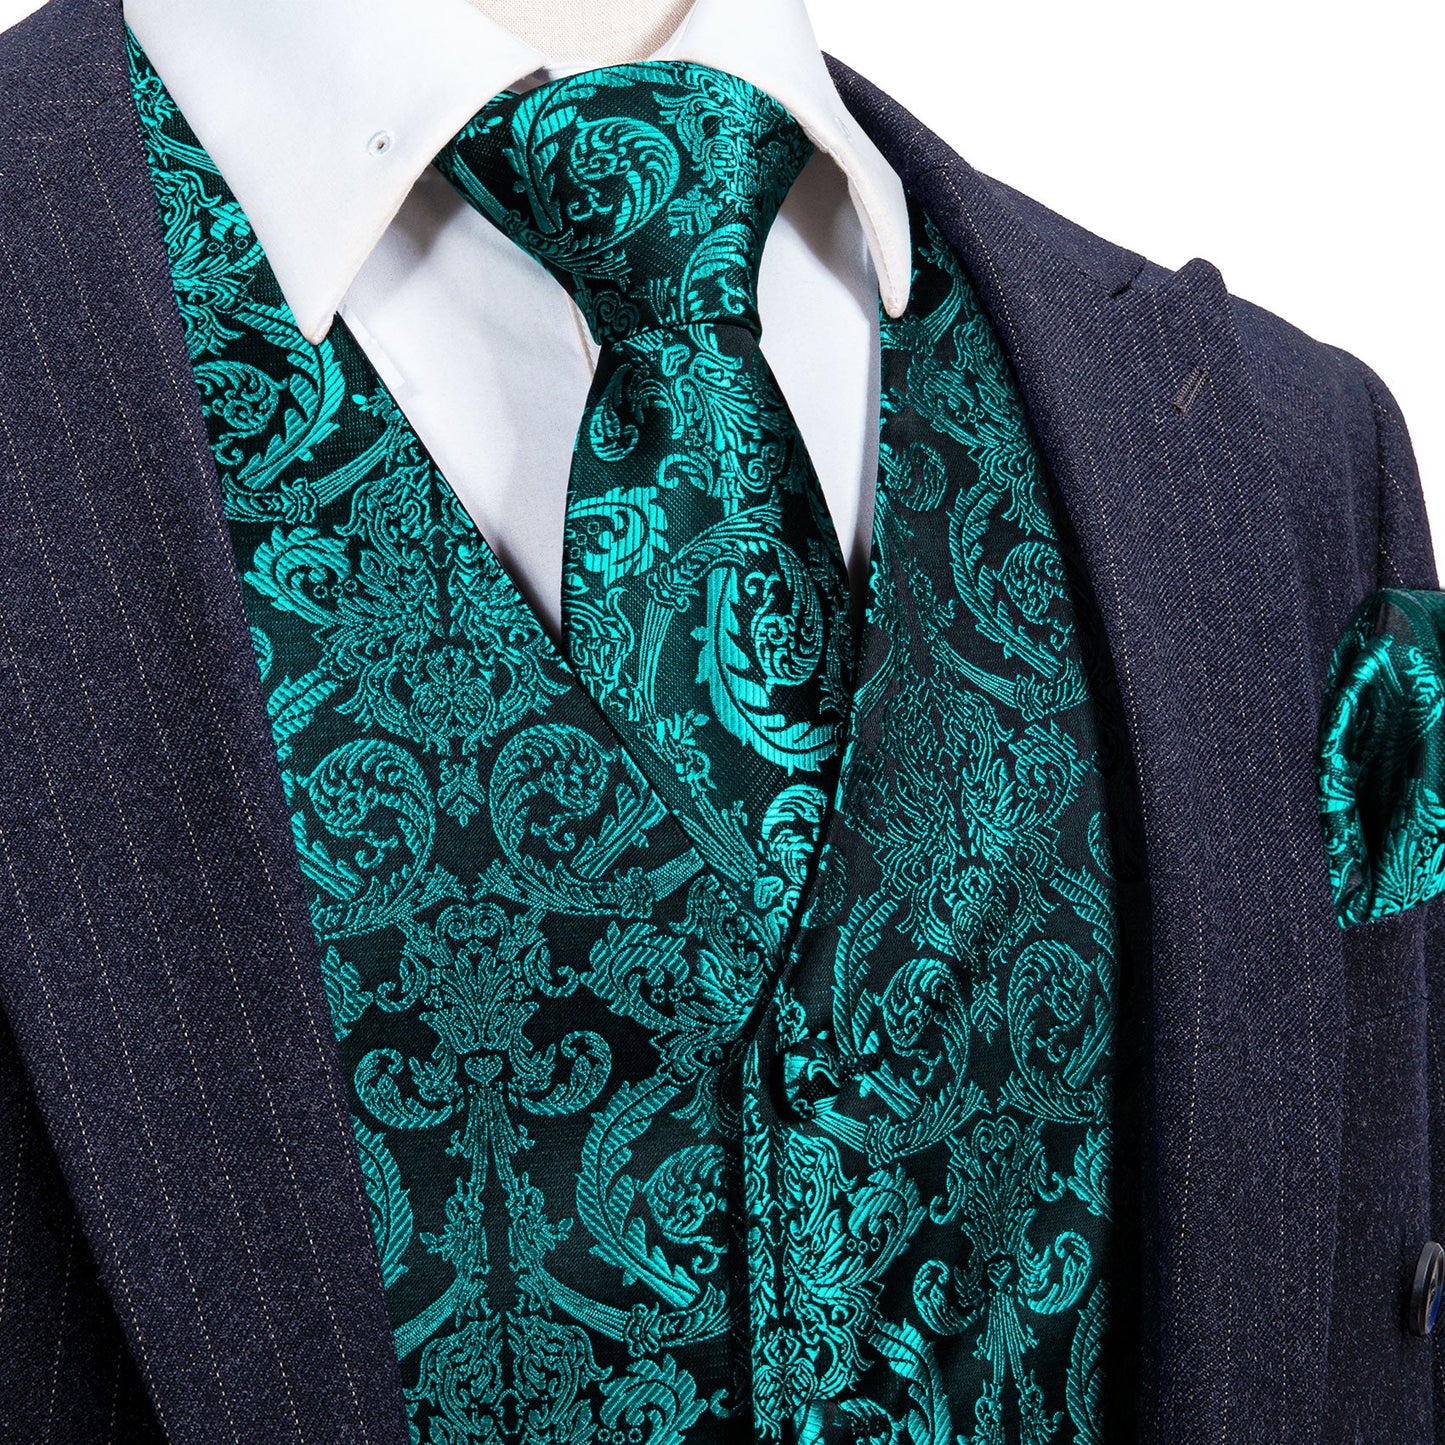 Designer Floral Waistcoat Silky Novelty Vest Teal Damask